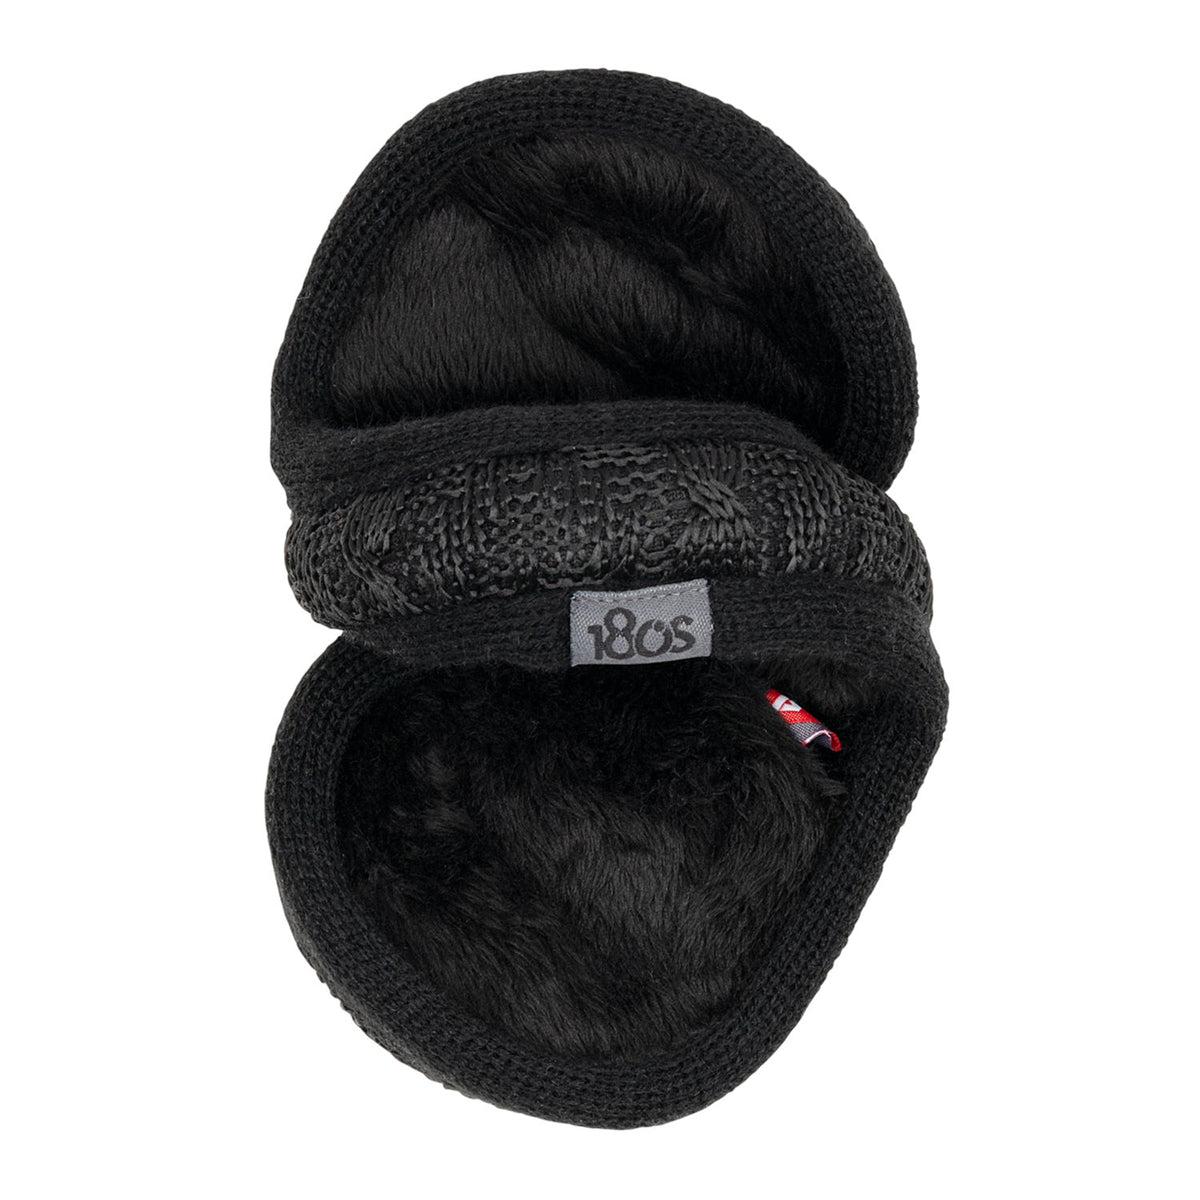 Jacquard Knit Ear Warmer Women Black